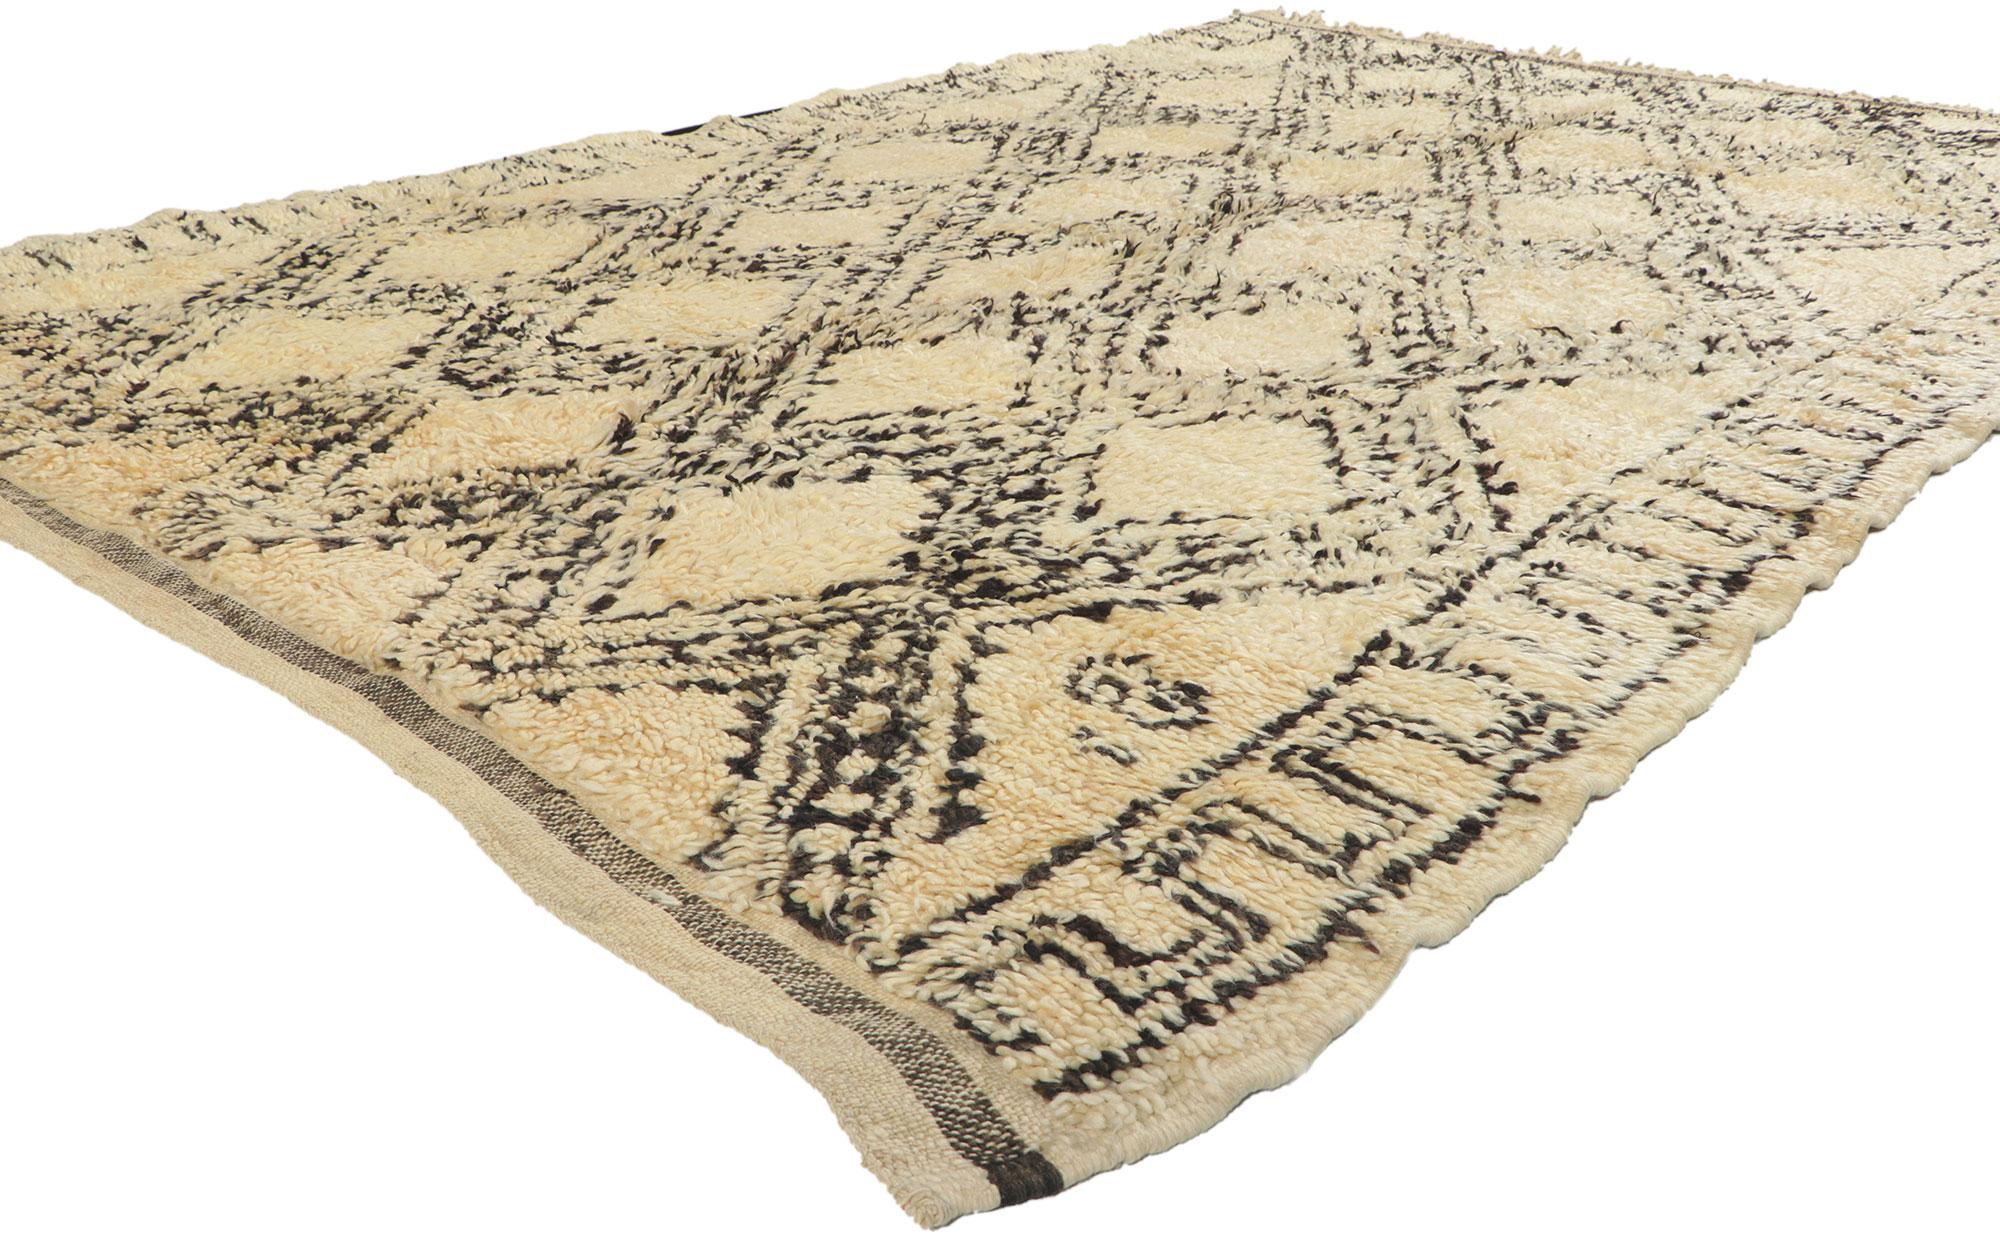 78395 Marokkanischer Vintage-Teppich Beni Ourain, 05'11 x 08'06. Dieser handgeknüpfte marokkanische Teppich aus Wolle im Vintage-Stil von Beni Ourain besticht durch seine Schlichtheit, seinen plüschigen Flor, seine unglaublichen Details und seine